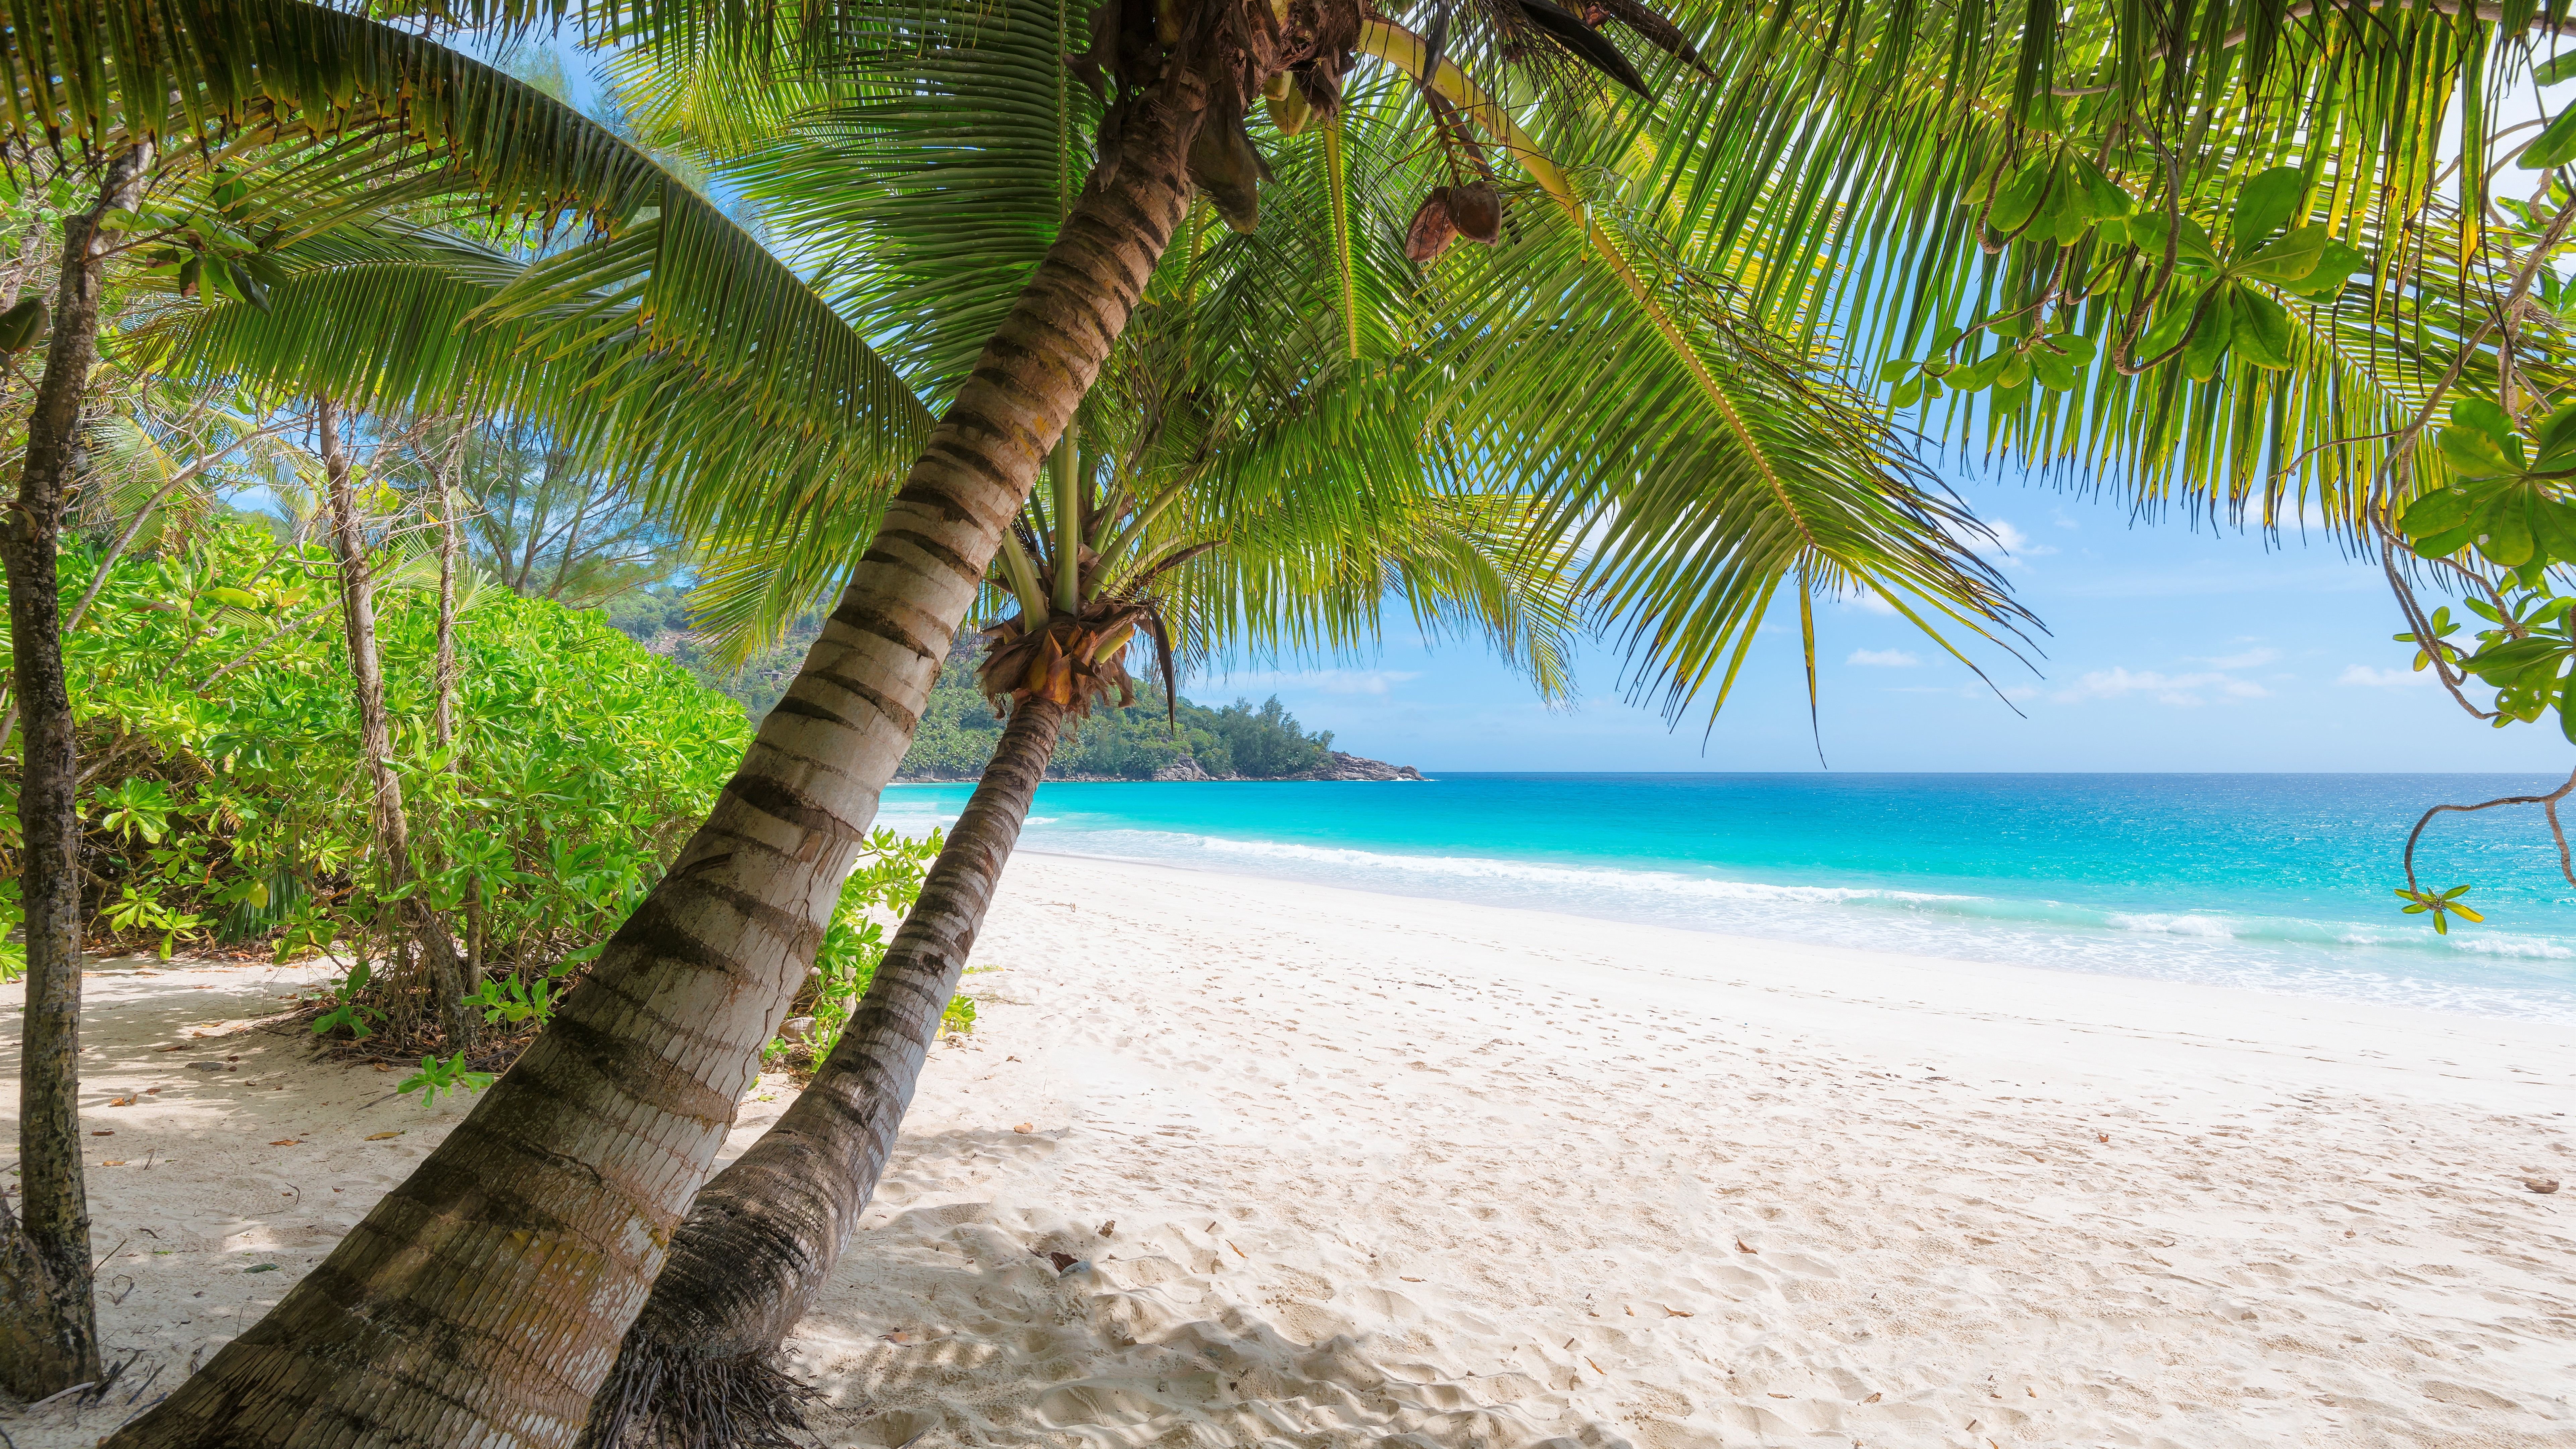 Wallpapers Palm trees, beach, sea, tropical, summer 7680x4320 UHD